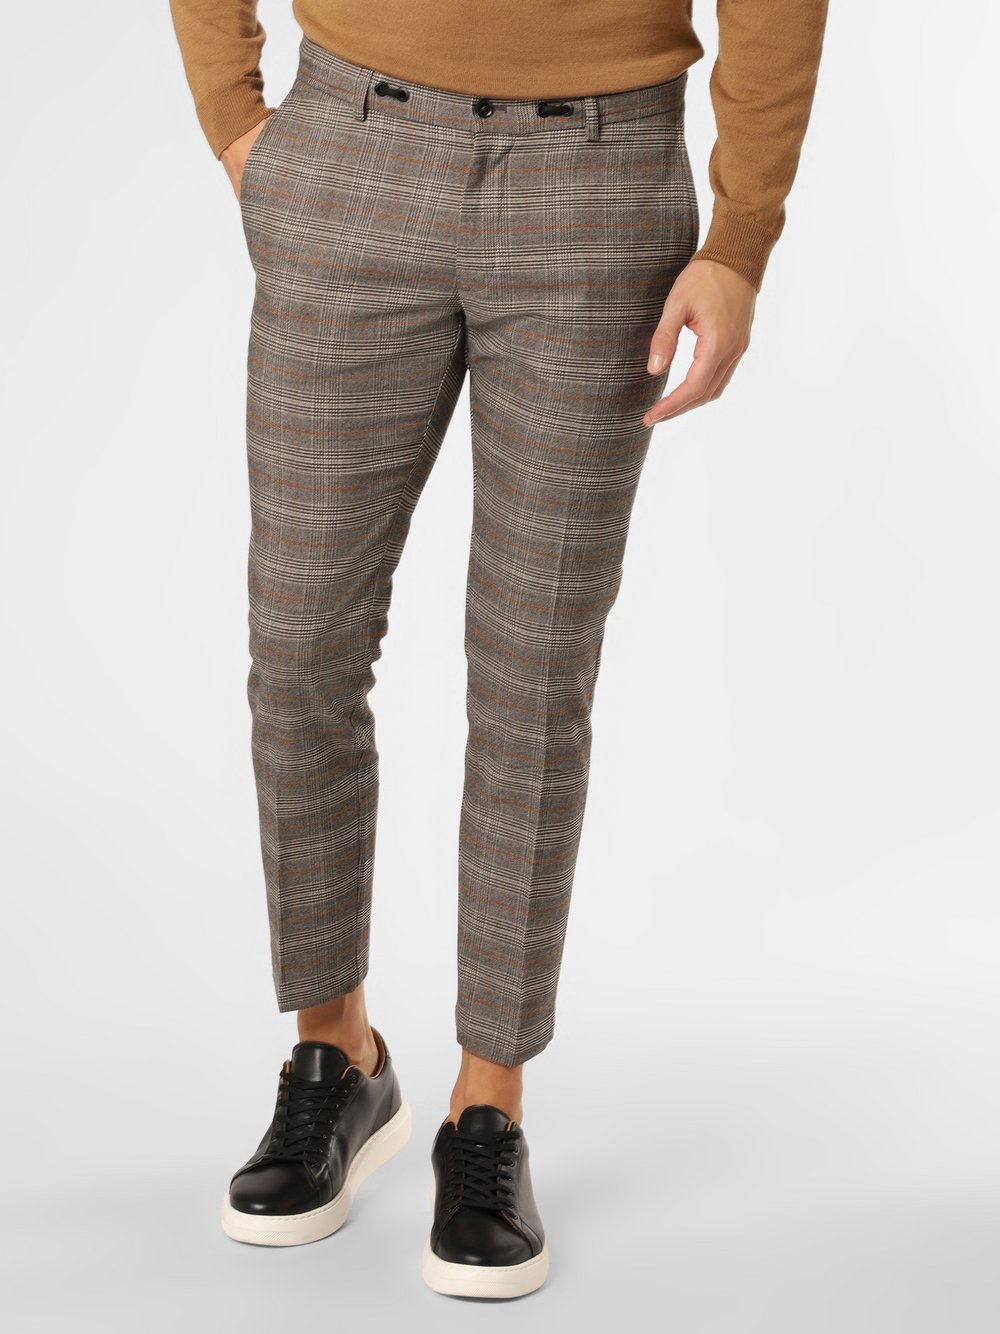 Finshley & Harding London - Męskie spodnie od garnituru modułowego – Russell, brązowy